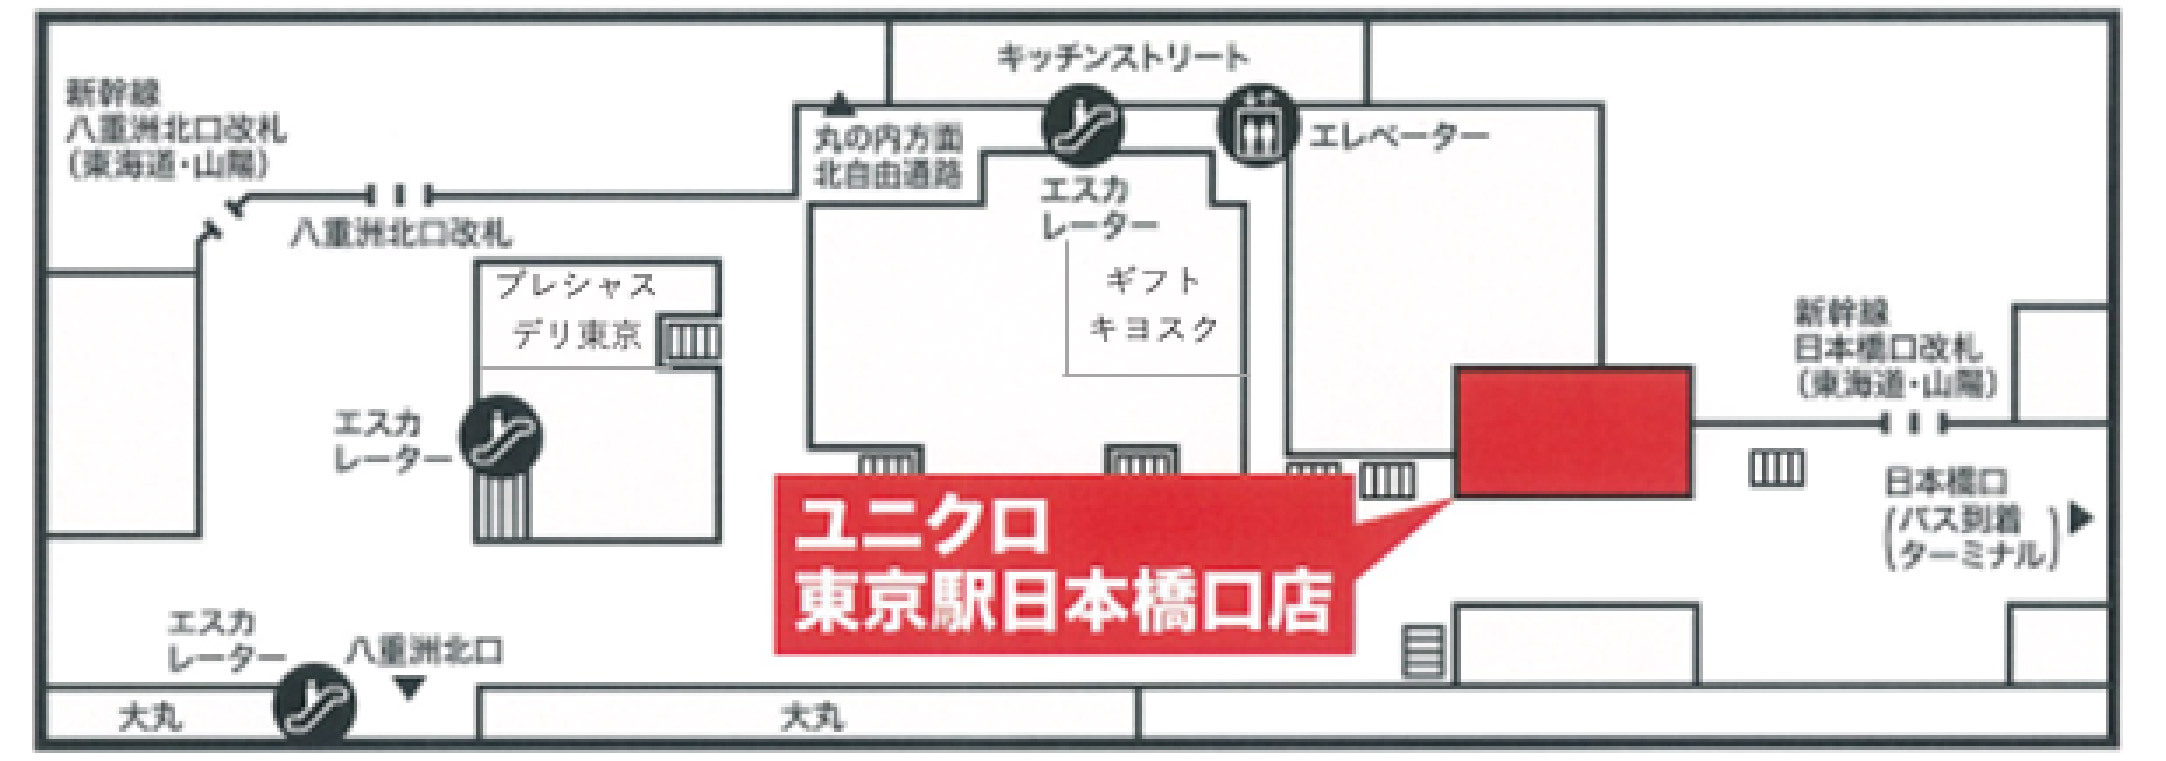 東京駅構内最大規模の ユニクロ が東京駅日本橋口に8月5日オープン 5日間限定オープンセールも実施 東海キヨスク株式会社のプレスリリース